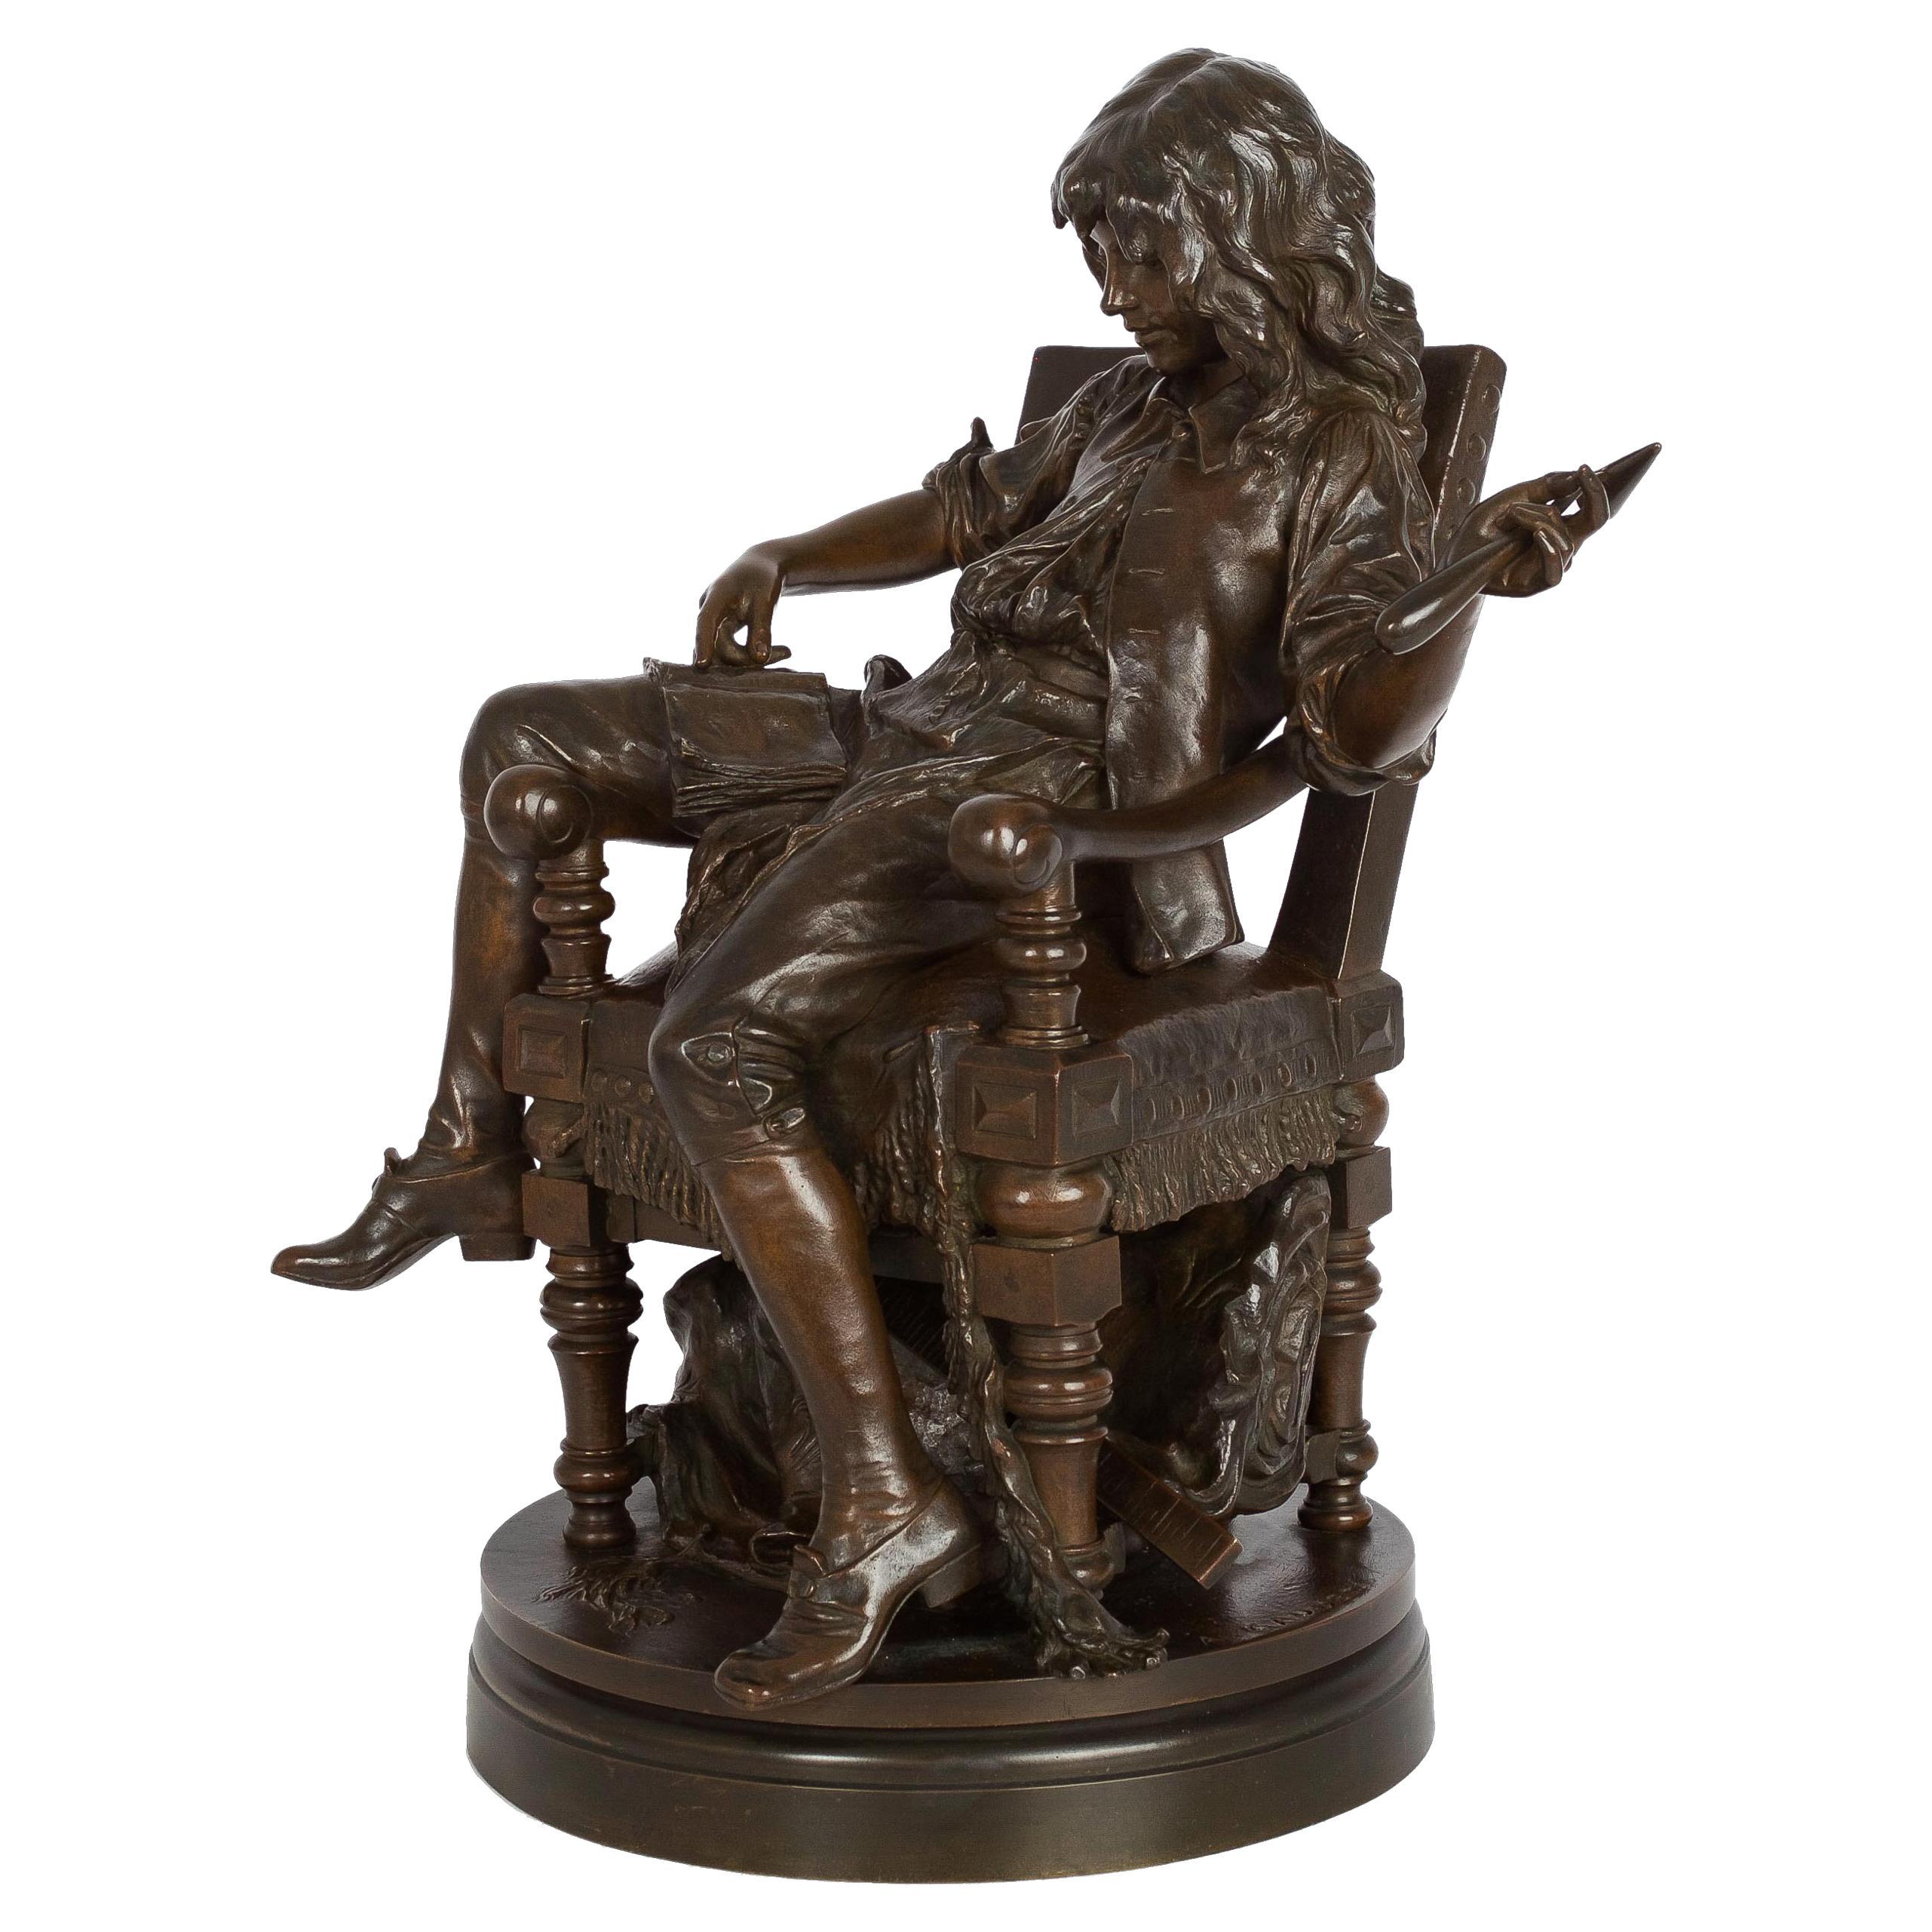 French Bronze Sculpture "Young Molière" After Adrien-Etienne Gaudez & Susse